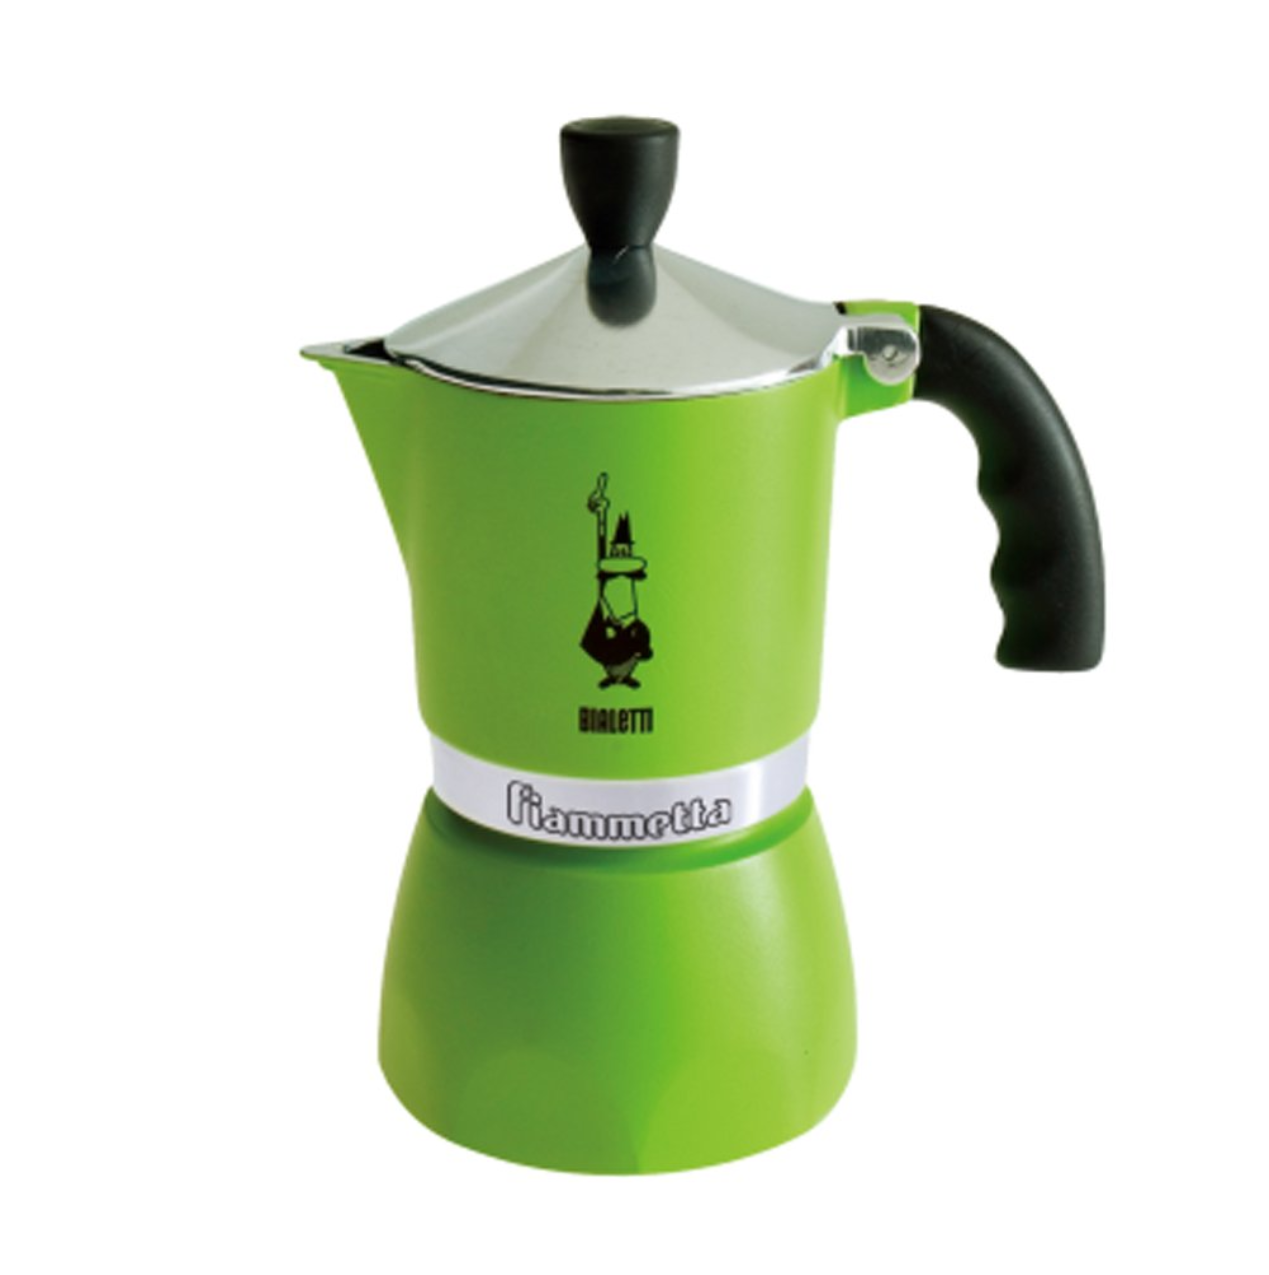 Bialetti Moka Pot 3 Cups Espresso Maker – Fiammetta Green